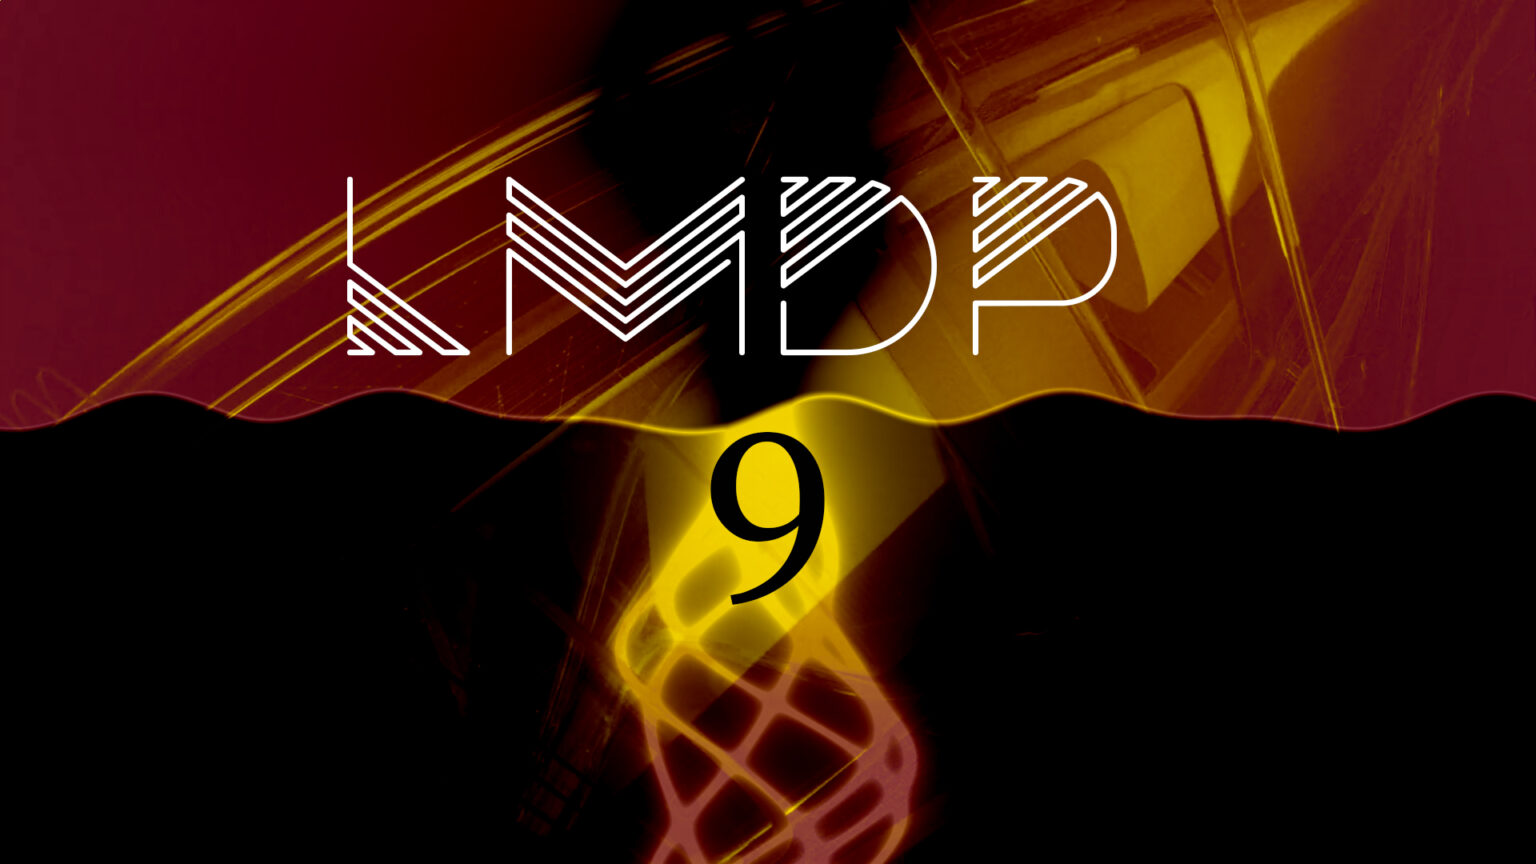 lmdp-9-orizz-1536x864